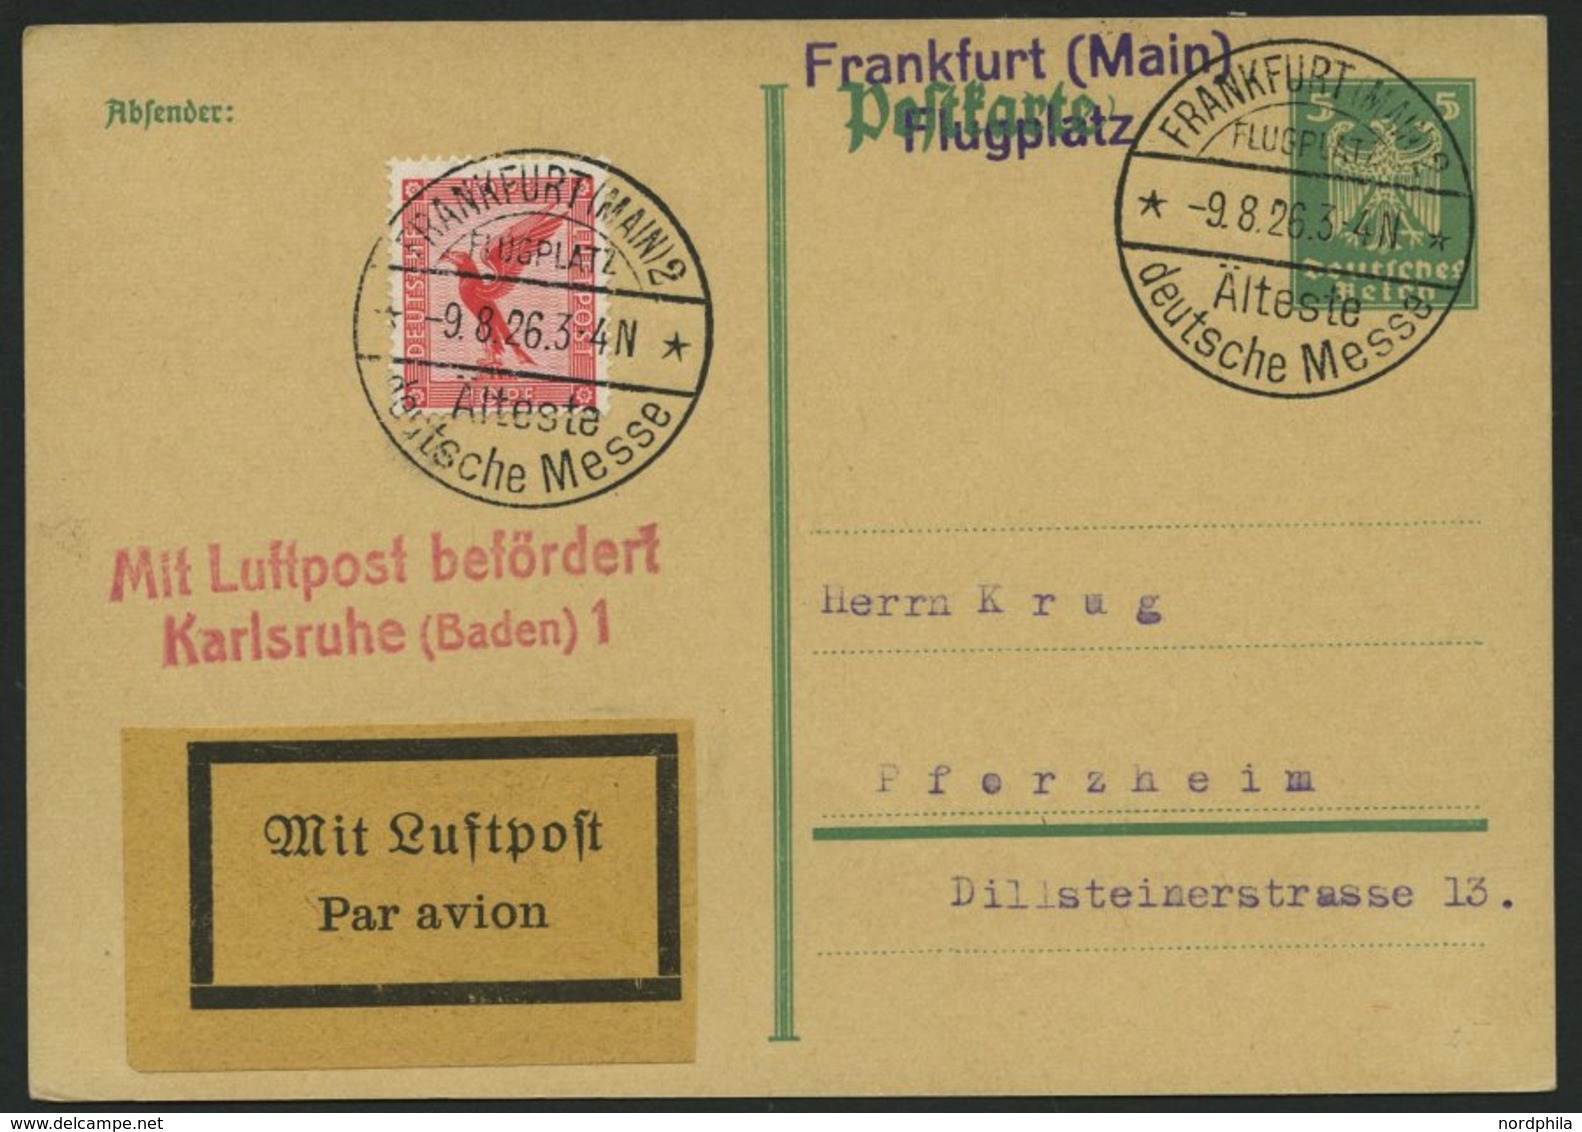 LUFTPOSTBESTÄTIGUNGSSTPL 59-02a BRIEF, KARLSRUHE 1, L2 In Rot, Postkarte Von FRANKFURT (MAIN) 2 Nach Pforzheim, Pracht - Poste Aérienne & Zeppelin